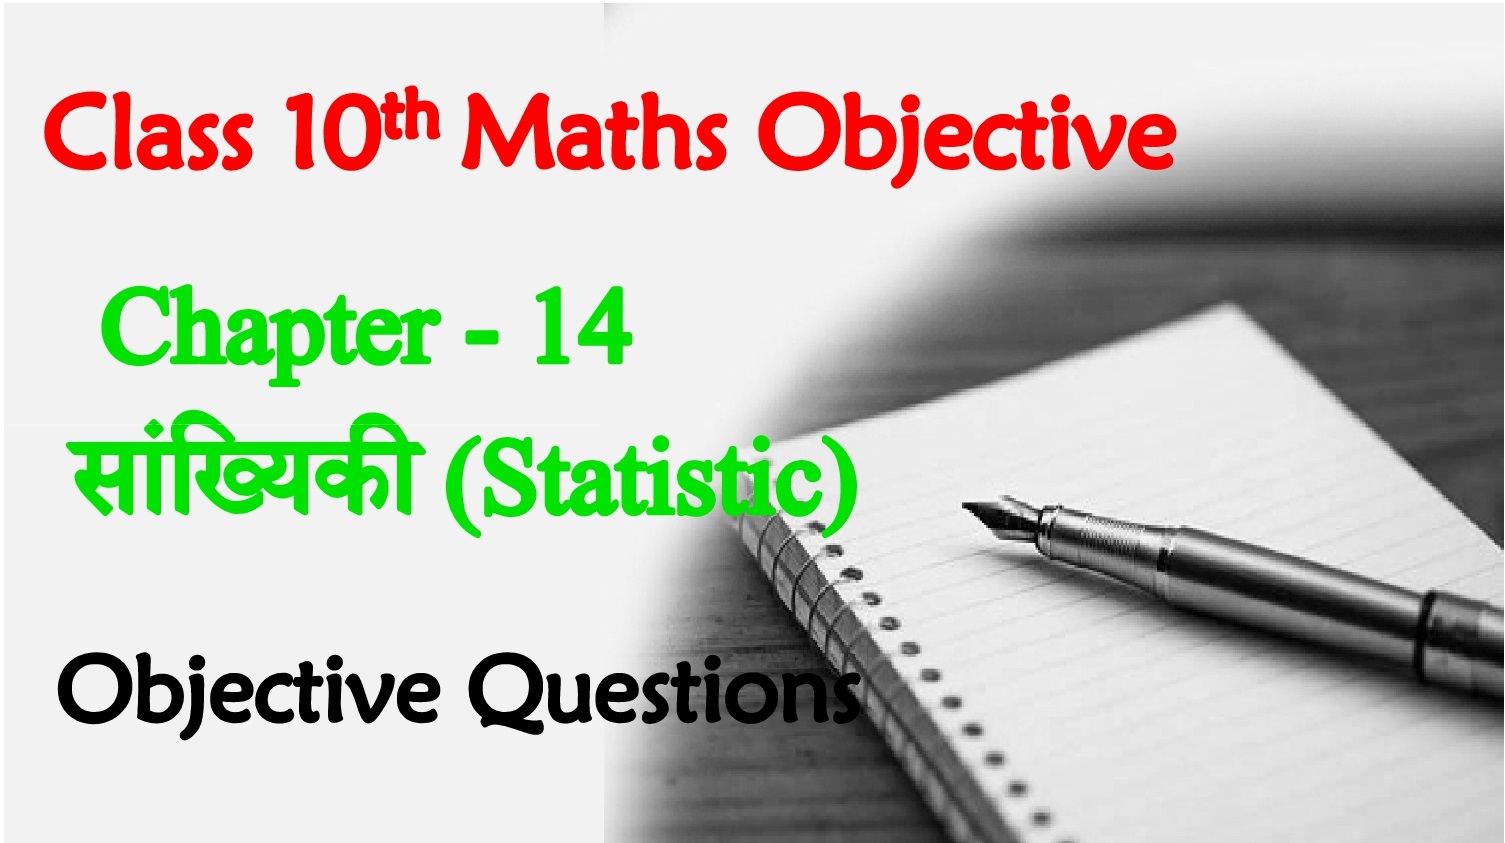 BSEB Class 10th Maths Ch 14. सांख्यिकी (Statistics)